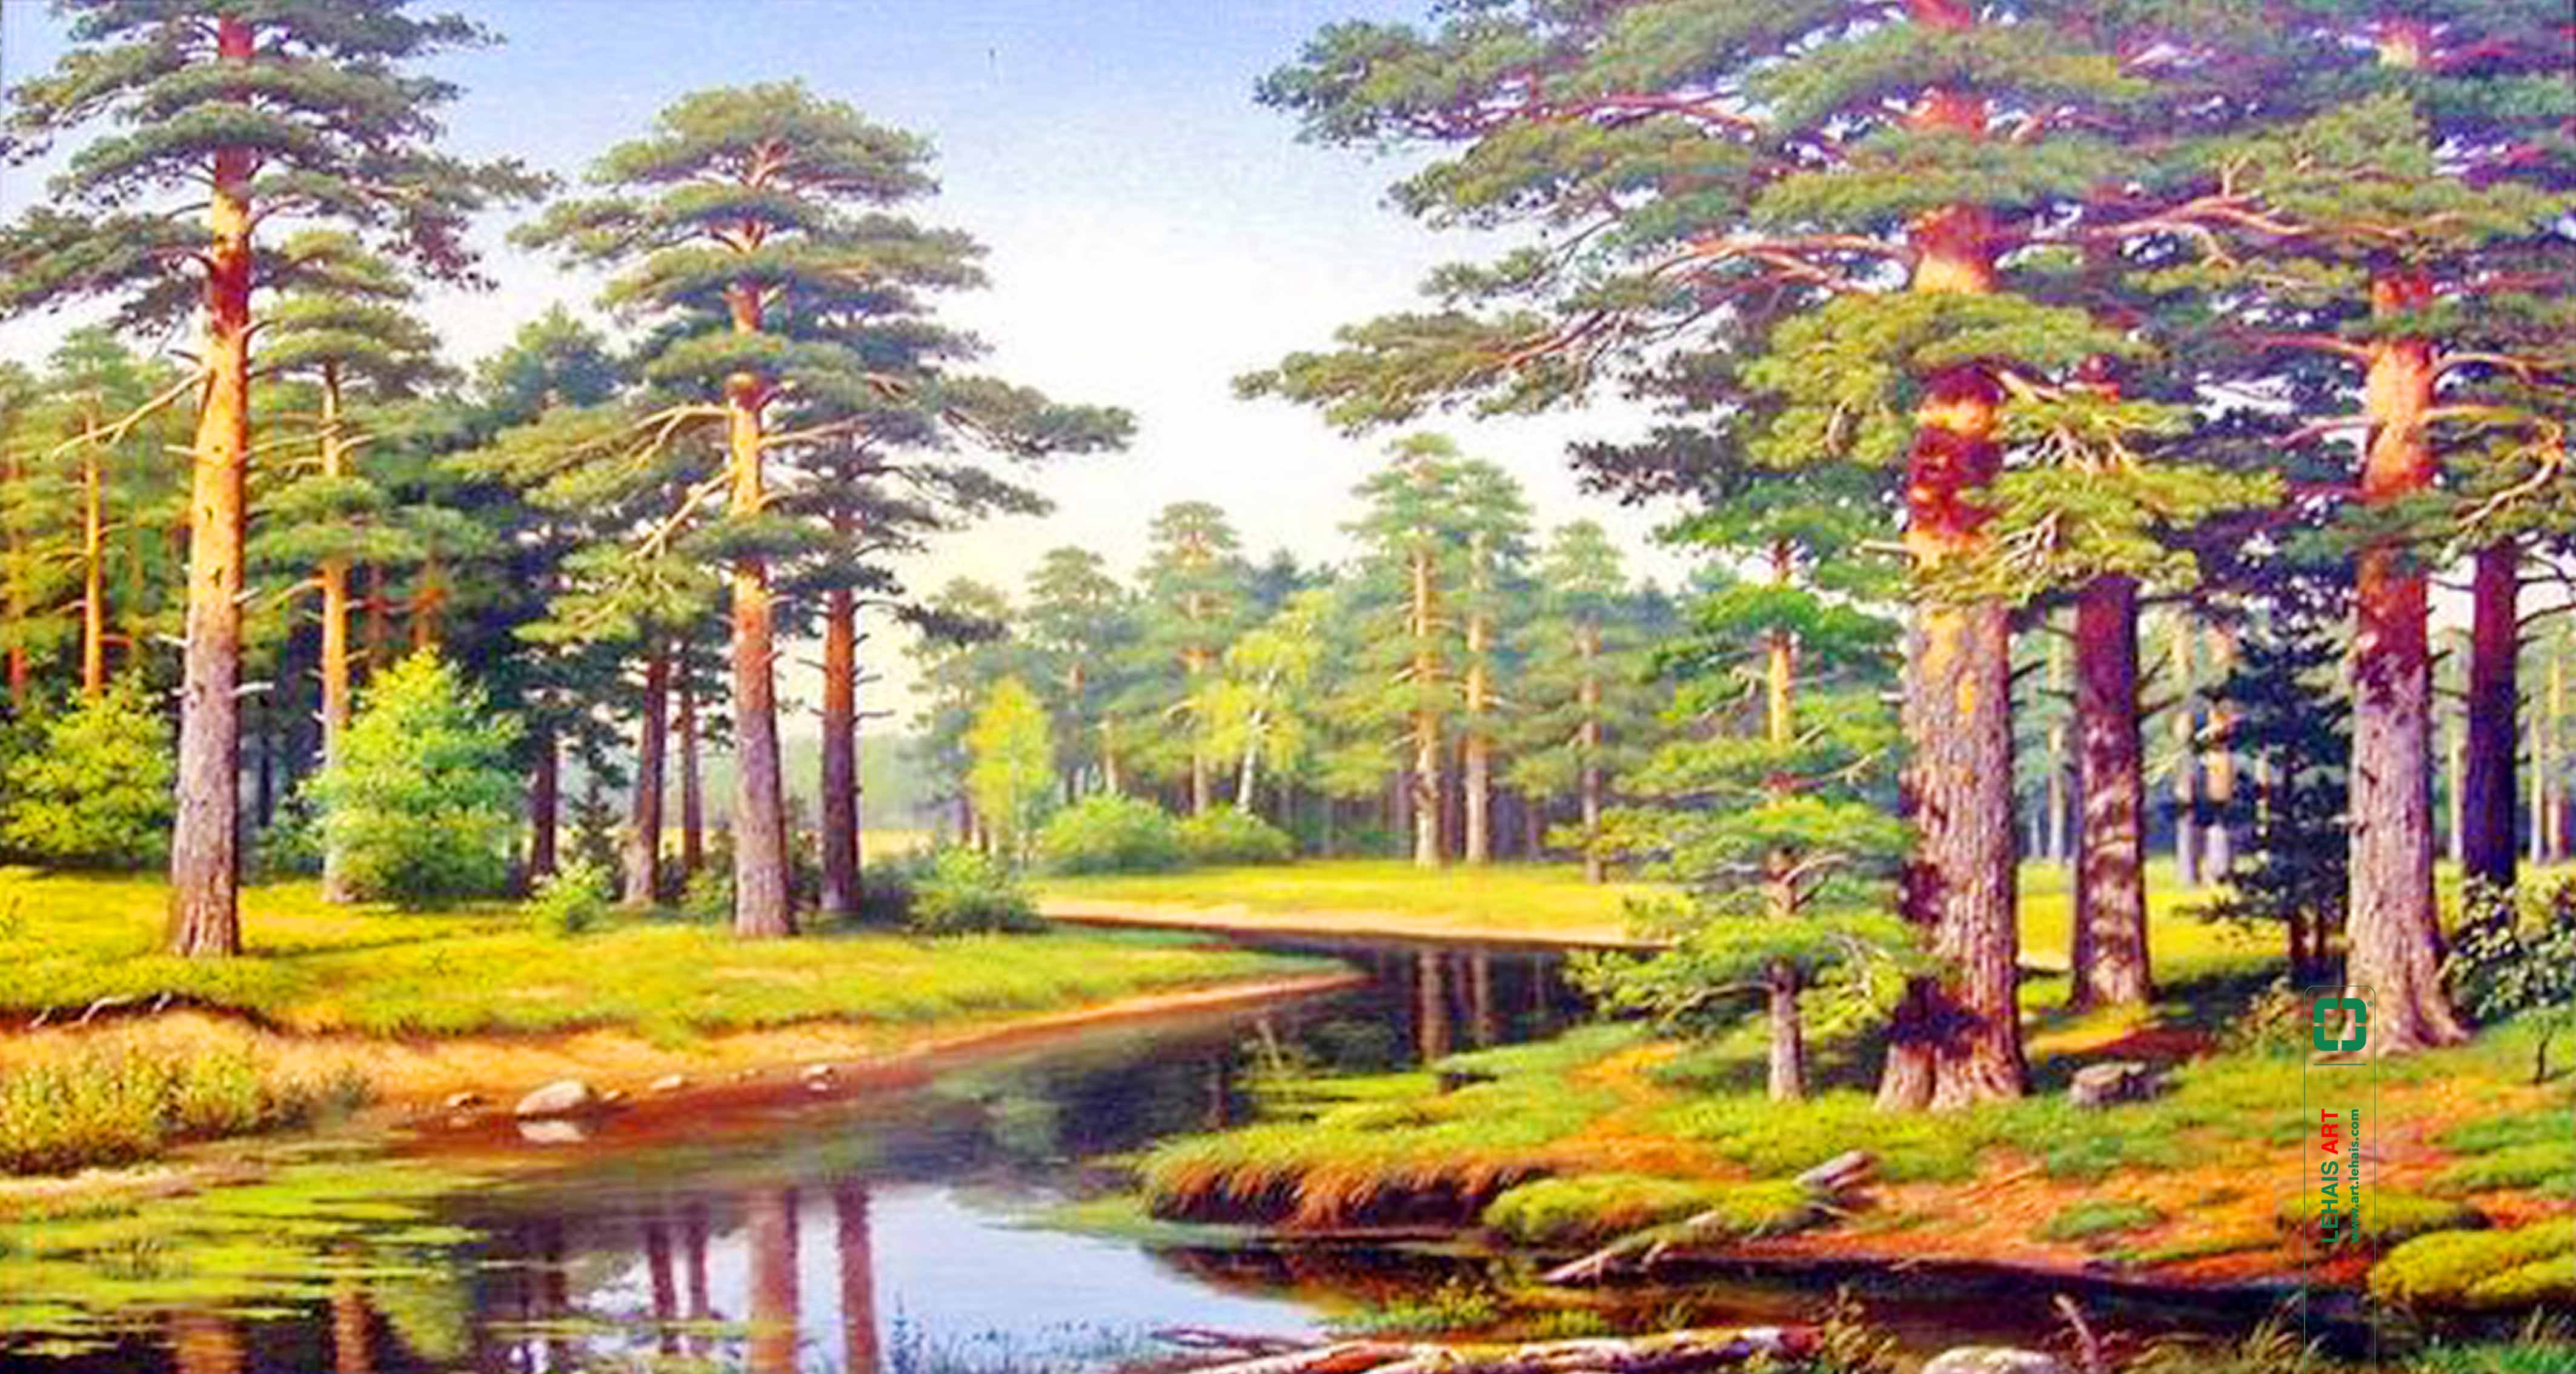 Tranh sơn dầu phong cảnh rừng cây và suối nước - TSD608LHAR